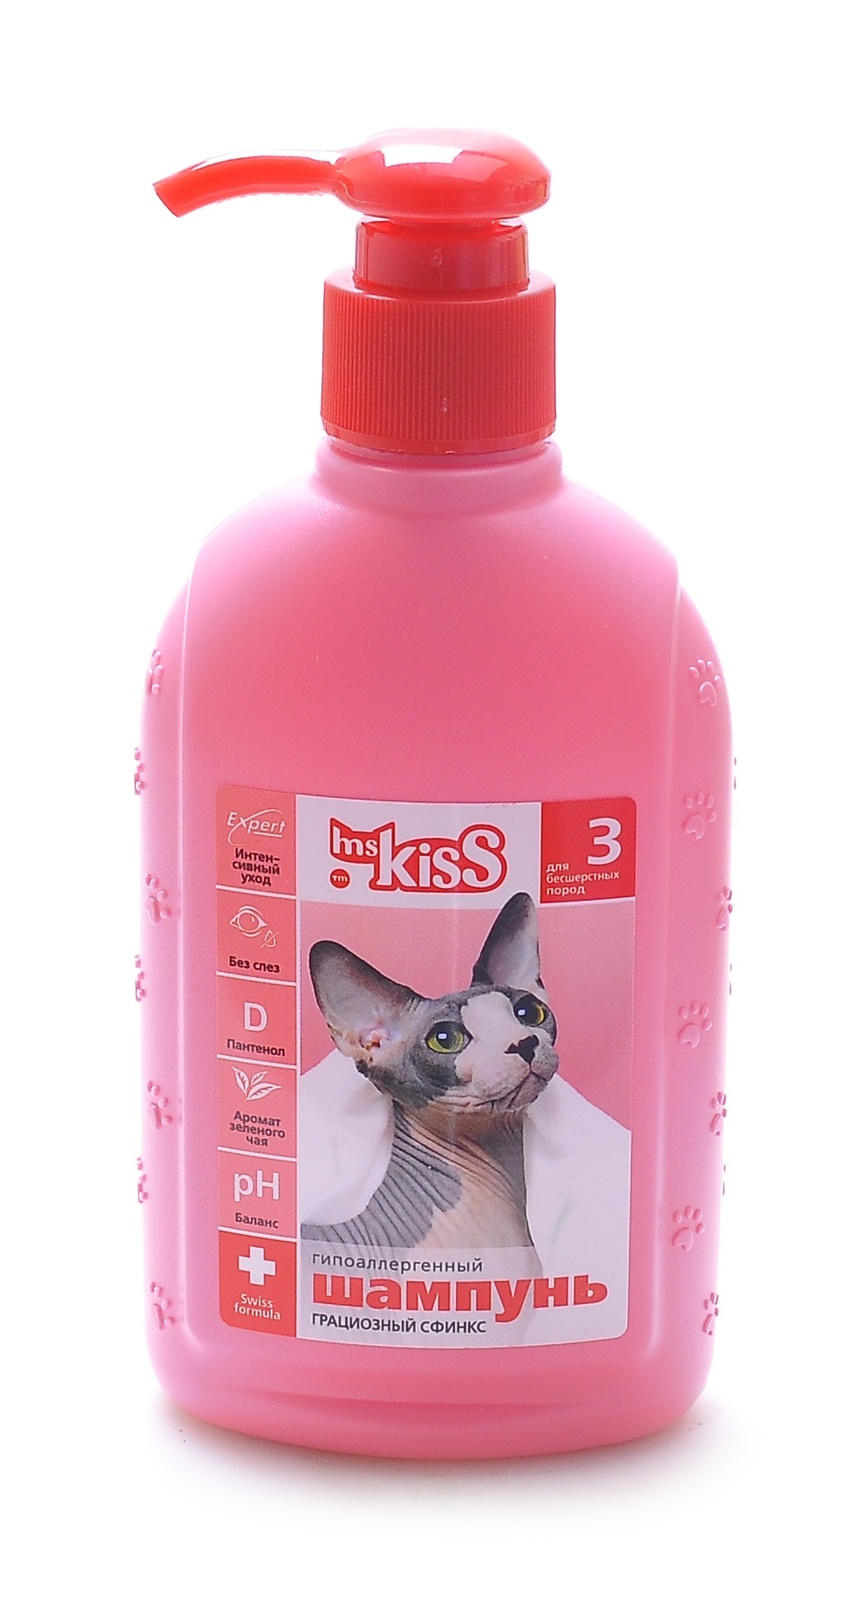 Ms.Kiss Ms.Kiss шампунь для бесшерстных пород Грациозный сфинкс (200 г)